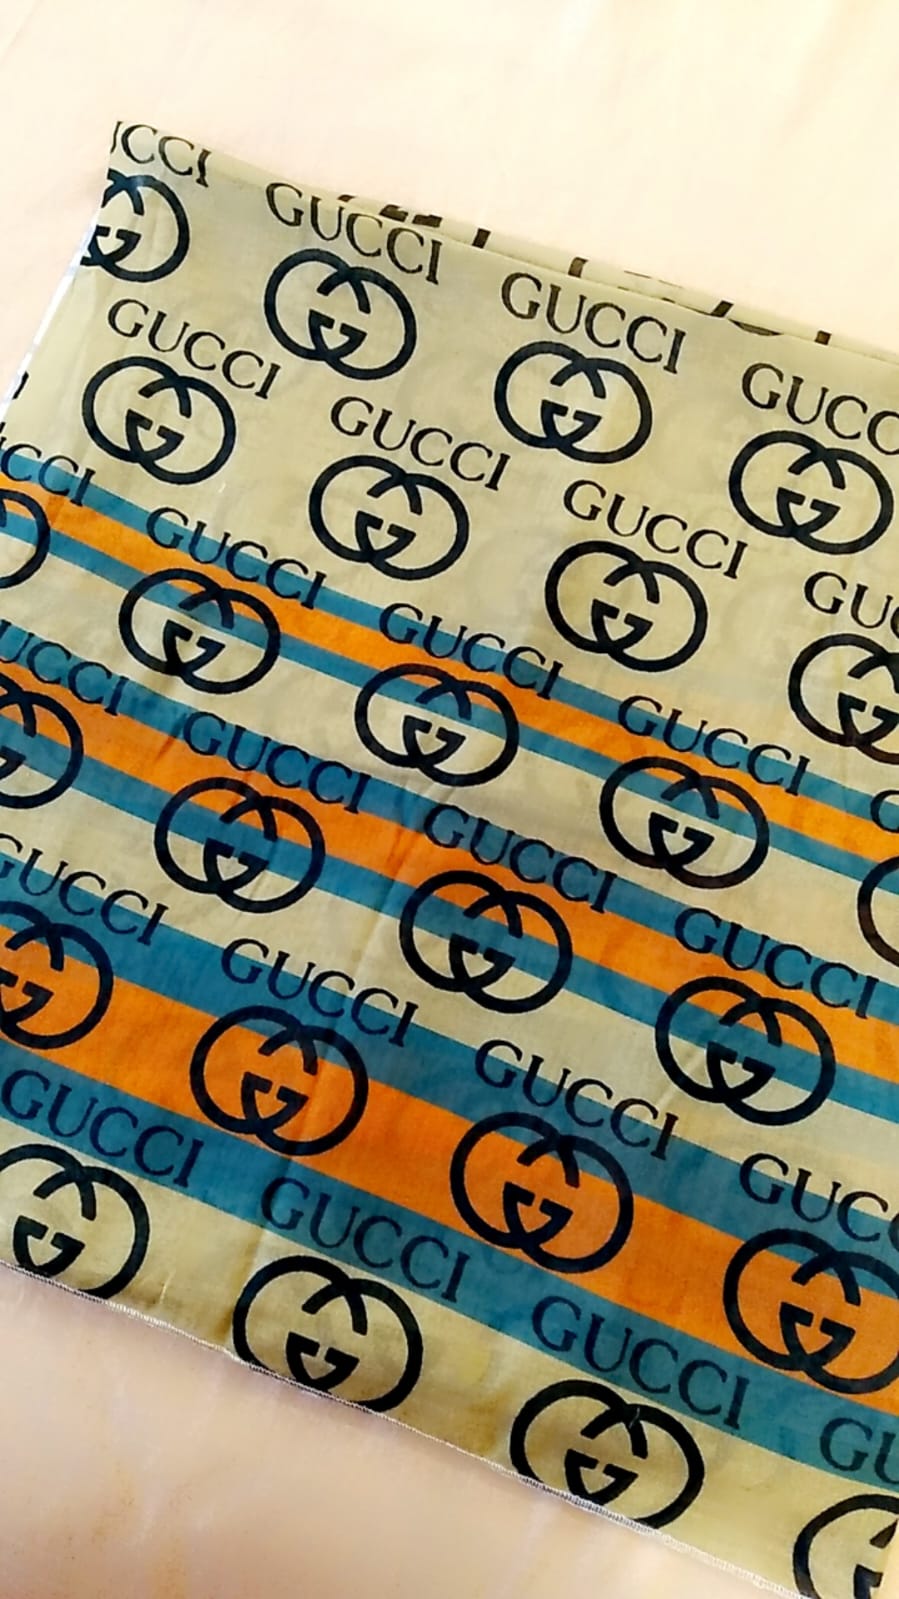 Digital printed Gucci scarf